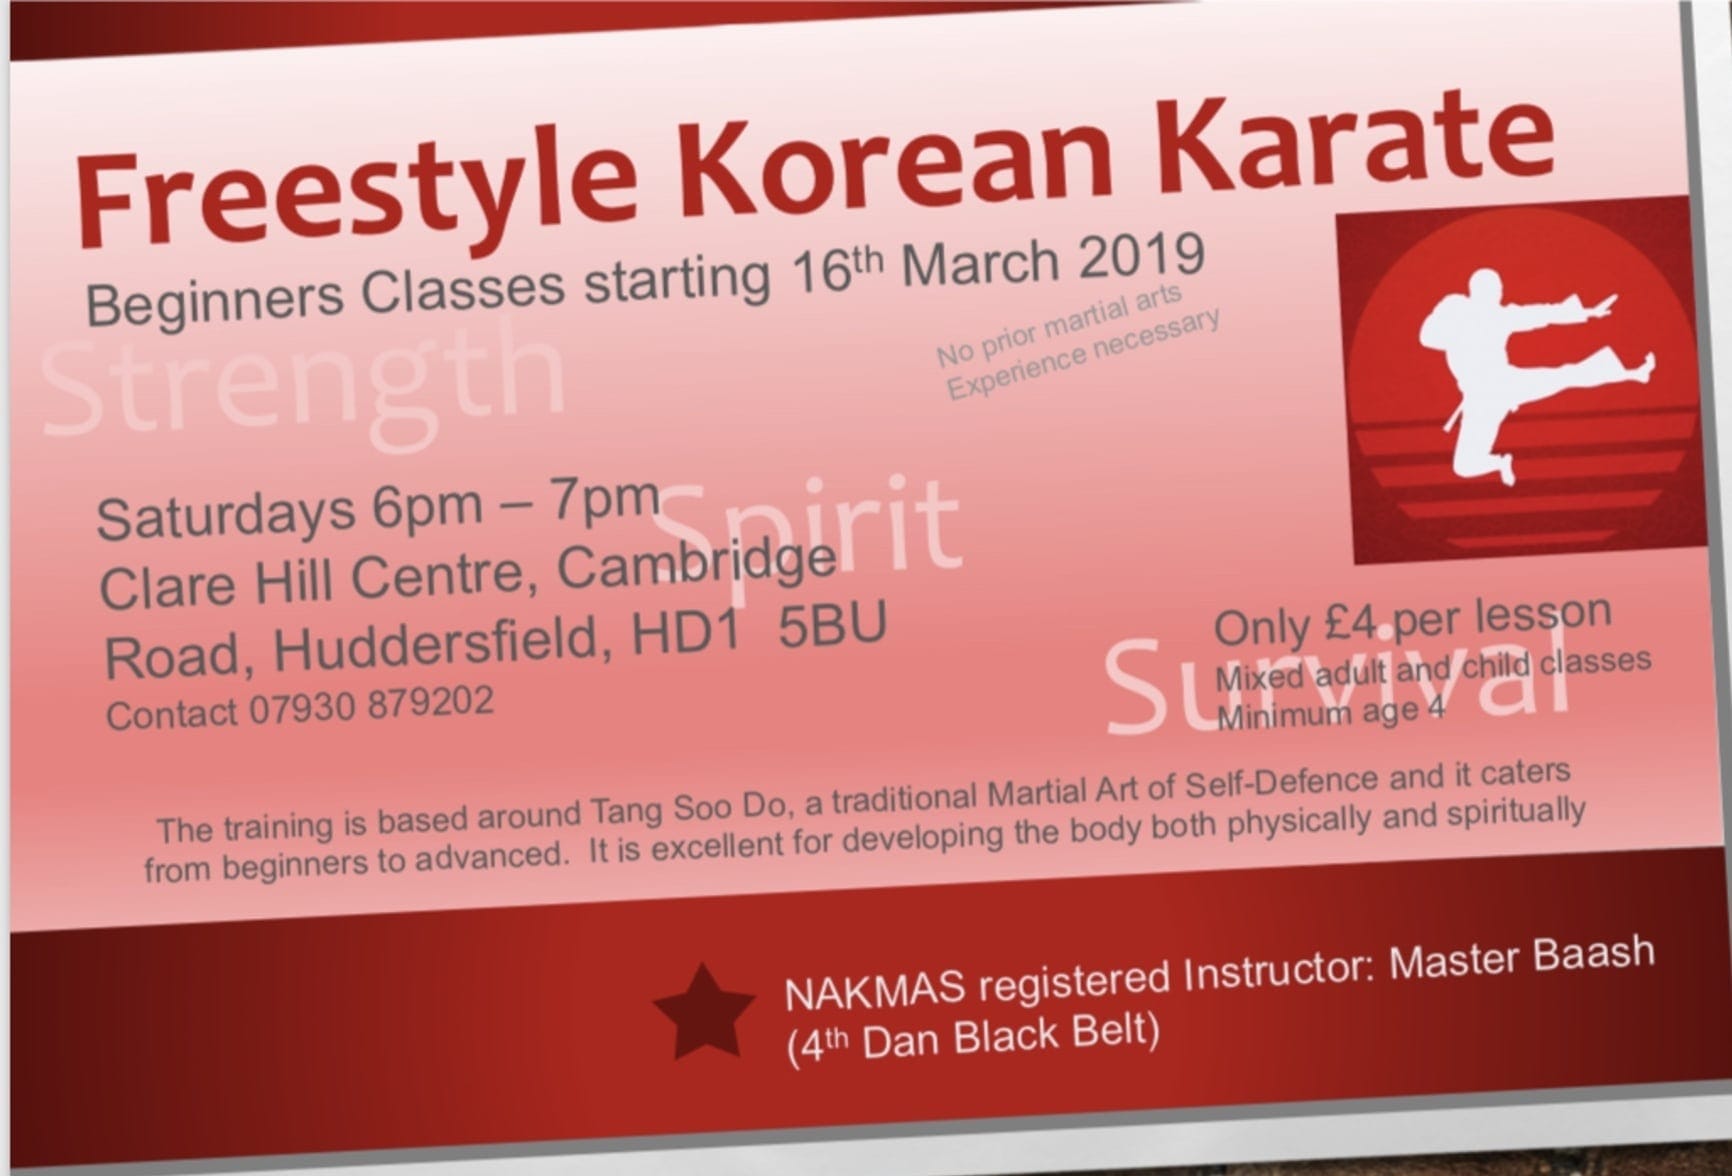 Freestyle Korean Karate